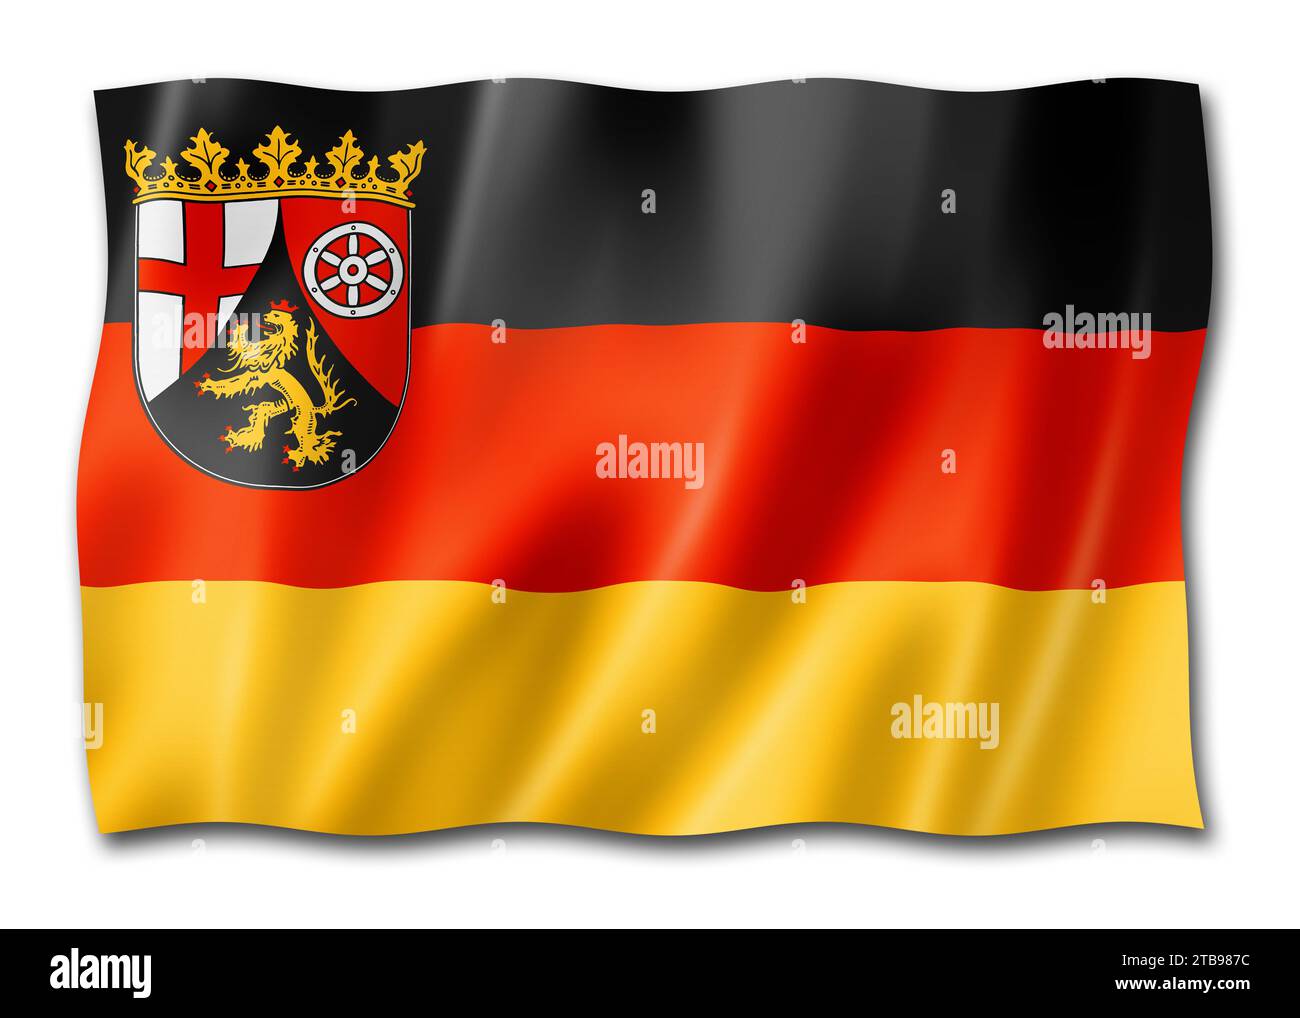 Drapeau de l'État du Palatinat rhénan, Allemagne, collection de bannières de spéléologie.Illustration 3D Banque D'Images